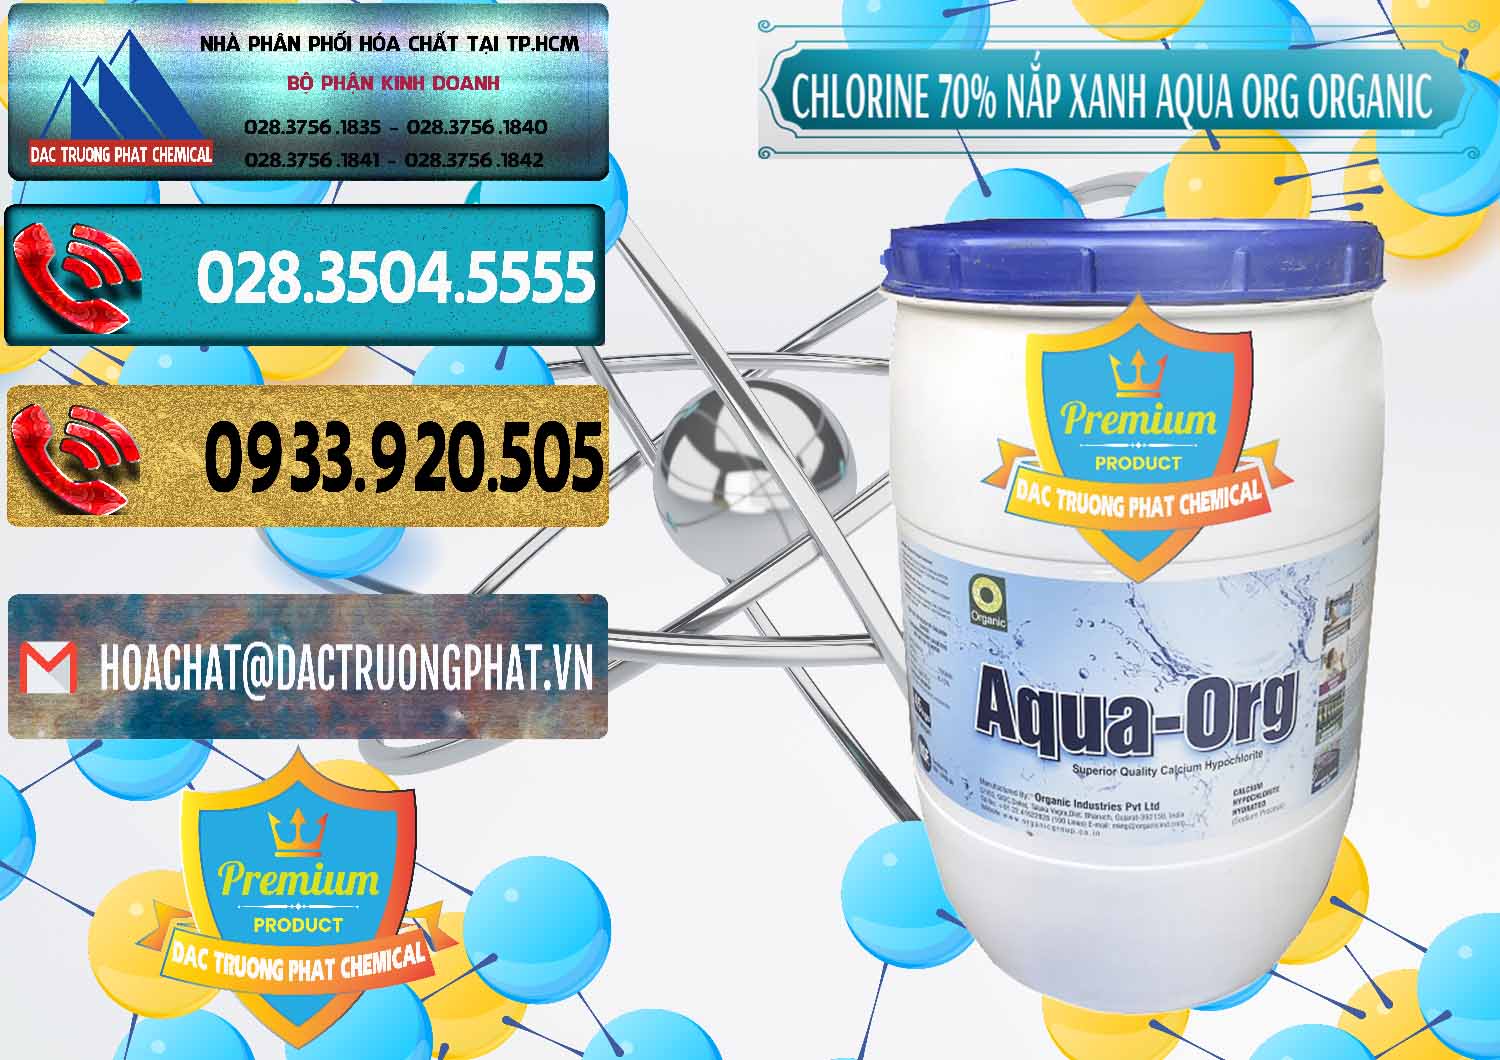 Công ty bán _ cung ứng Chlorine – Clorin 70% Thùng Tròn Nắp Xanh Aqua ORG Organic Ấn Độ India - 0247 - Nơi bán _ phân phối hóa chất tại TP.HCM - hoachatdetnhuom.com